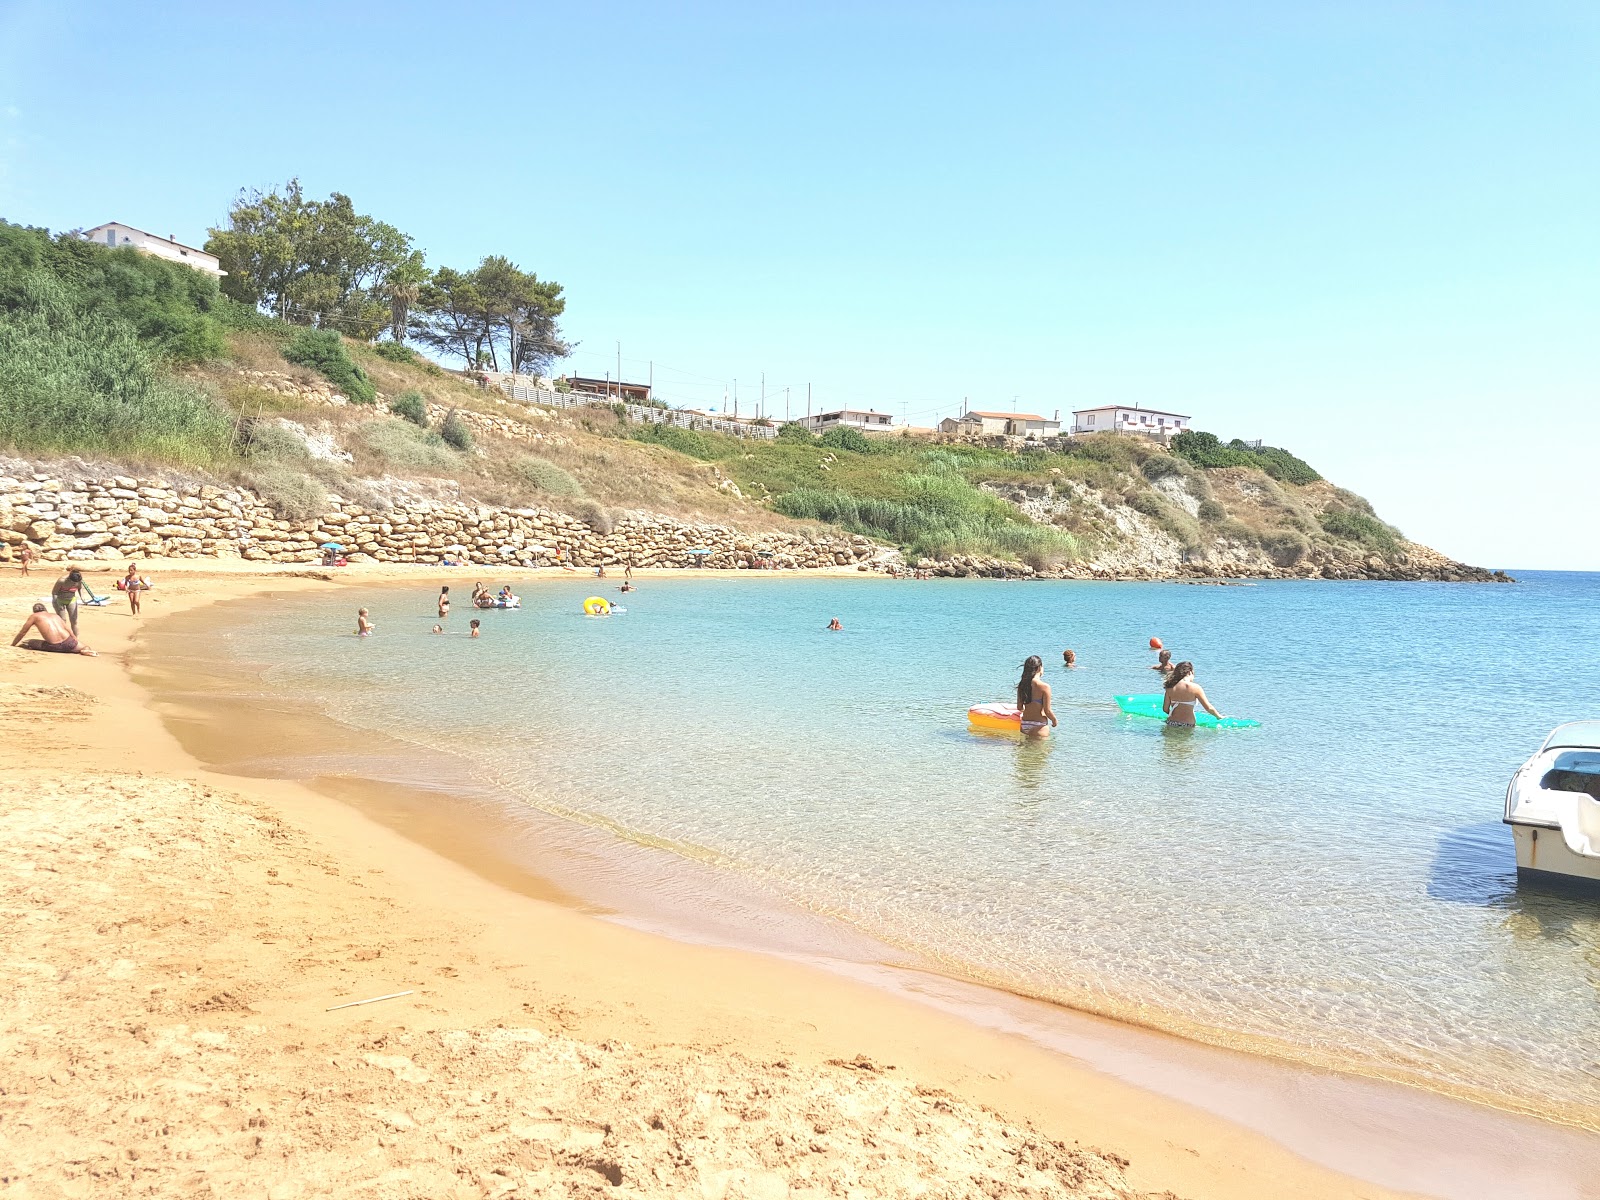 Fotografija Spiaggia Capo Bianco z modra voda površino